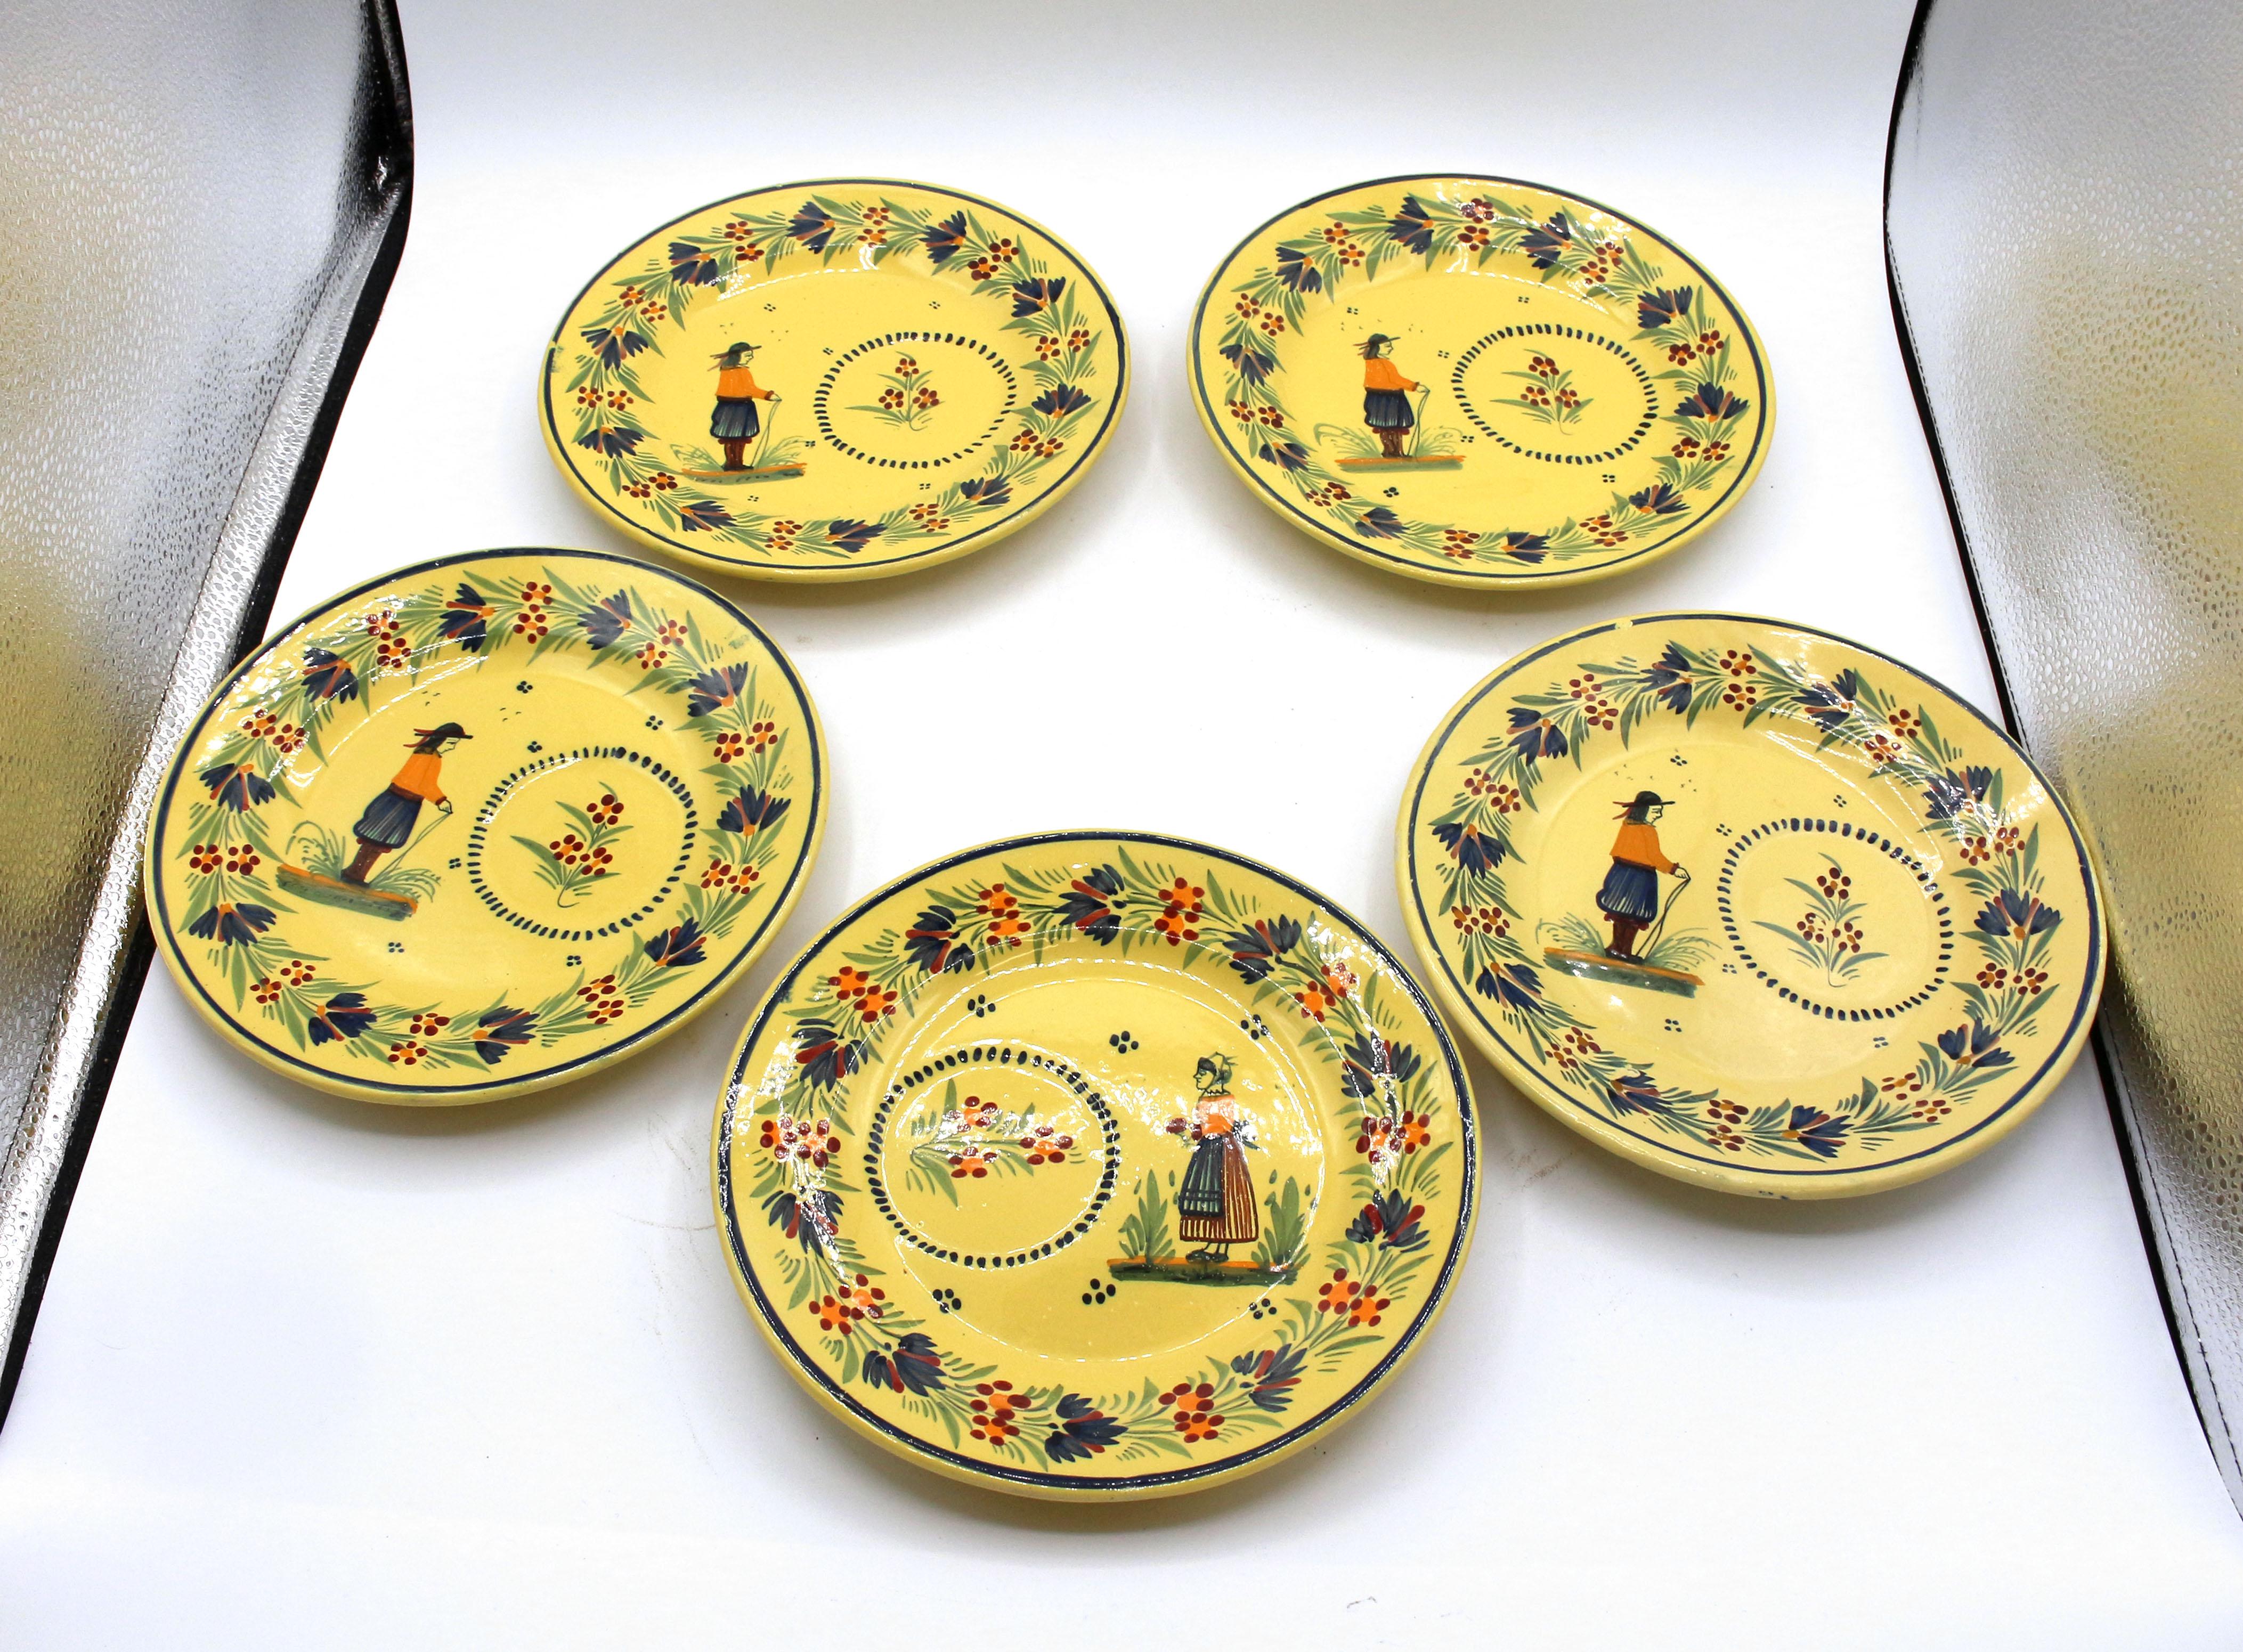 Ensemble de 4 tasses et 5 assiettes à sandwich, A.I.C., c.1950. Henriot Quimper, 1922-68 marques. Figures en habits traditionnels bretons sur fond jaune.
Plaques de 8